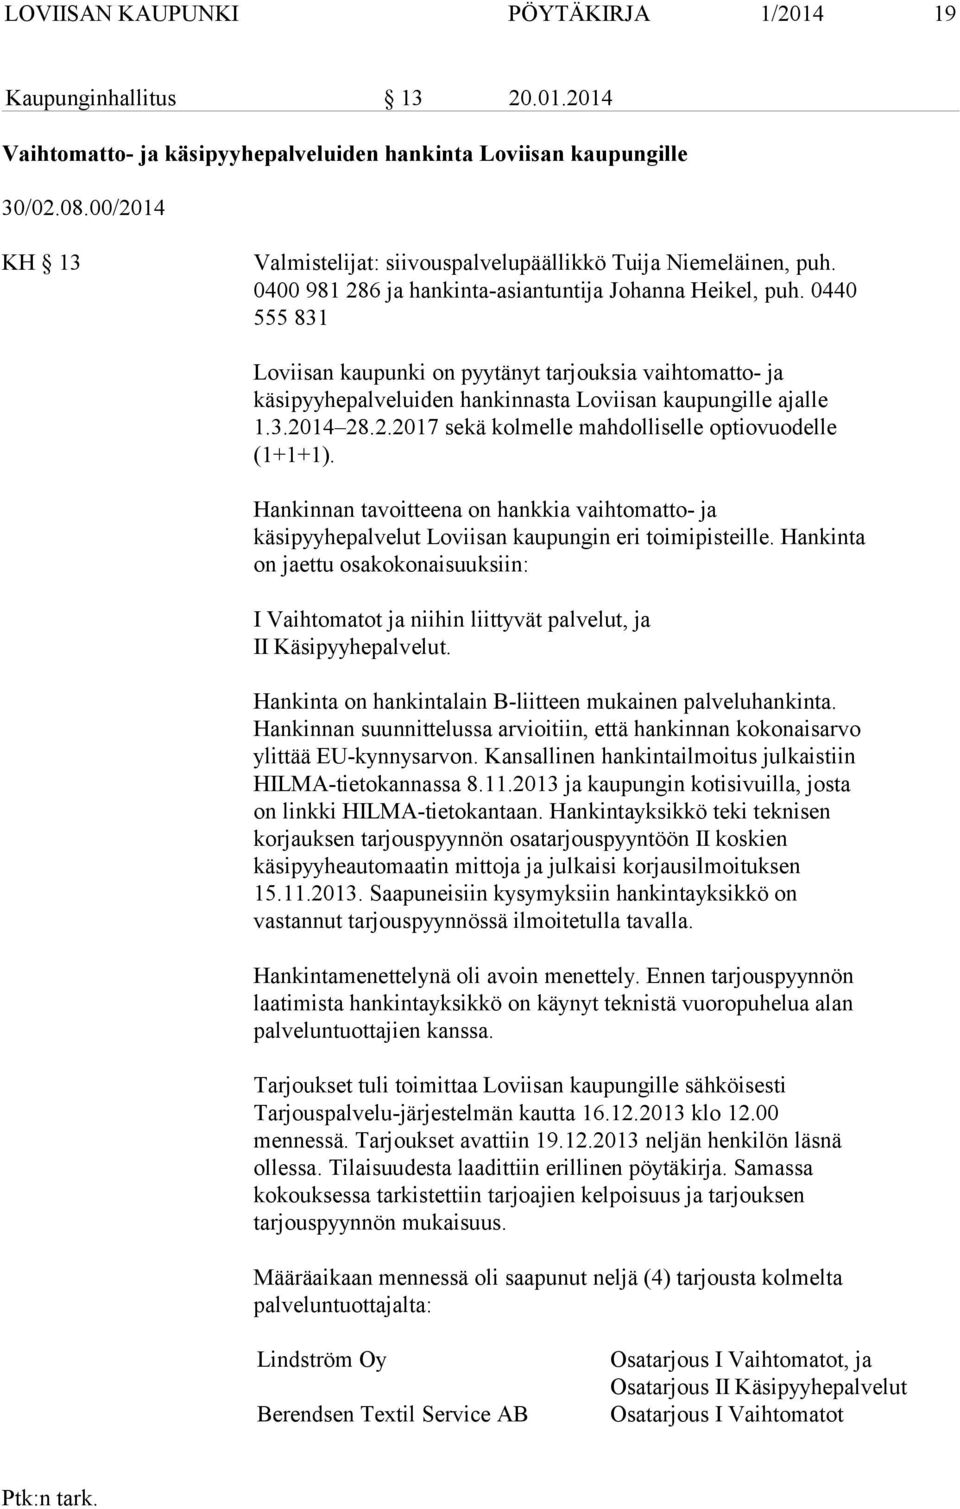 0440 555 831 Loviisan kaupunki on pyytänyt tarjouksia vaihtomatto- ja käsipyyhepalveluiden hankinnasta Loviisan kaupungille ajalle 1.3.2014 28.2.2017 sekä kolmelle mahdolliselle optiovuodelle (1+1+1).